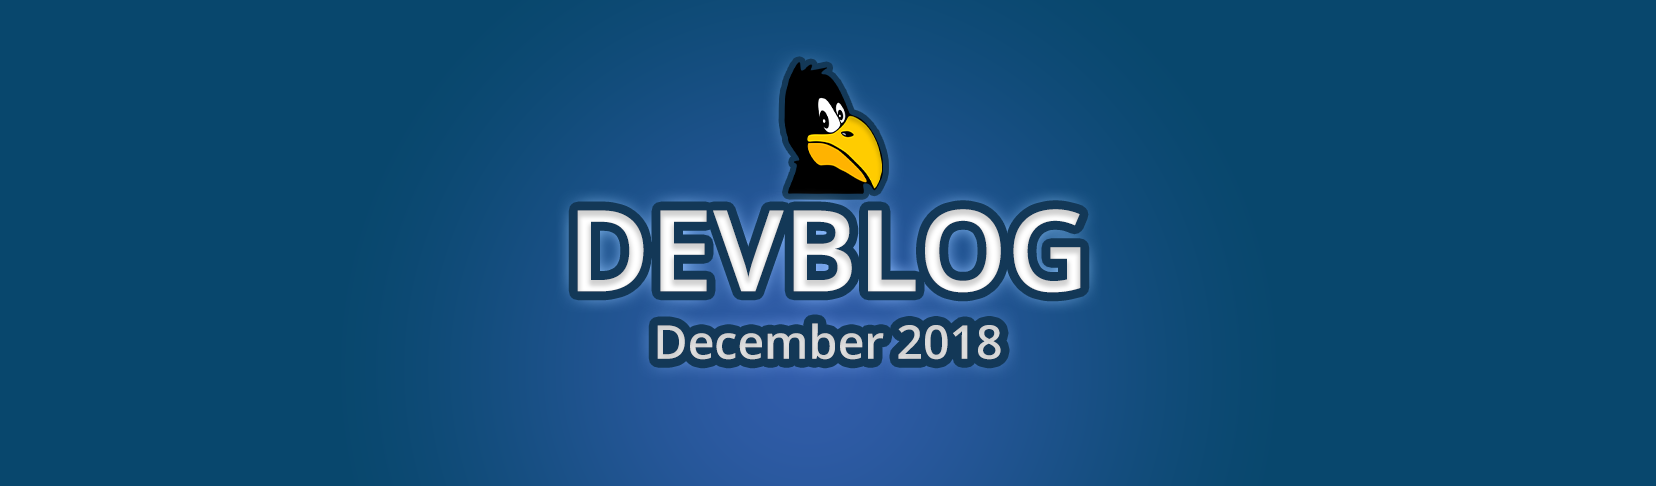 Devblog December 2018